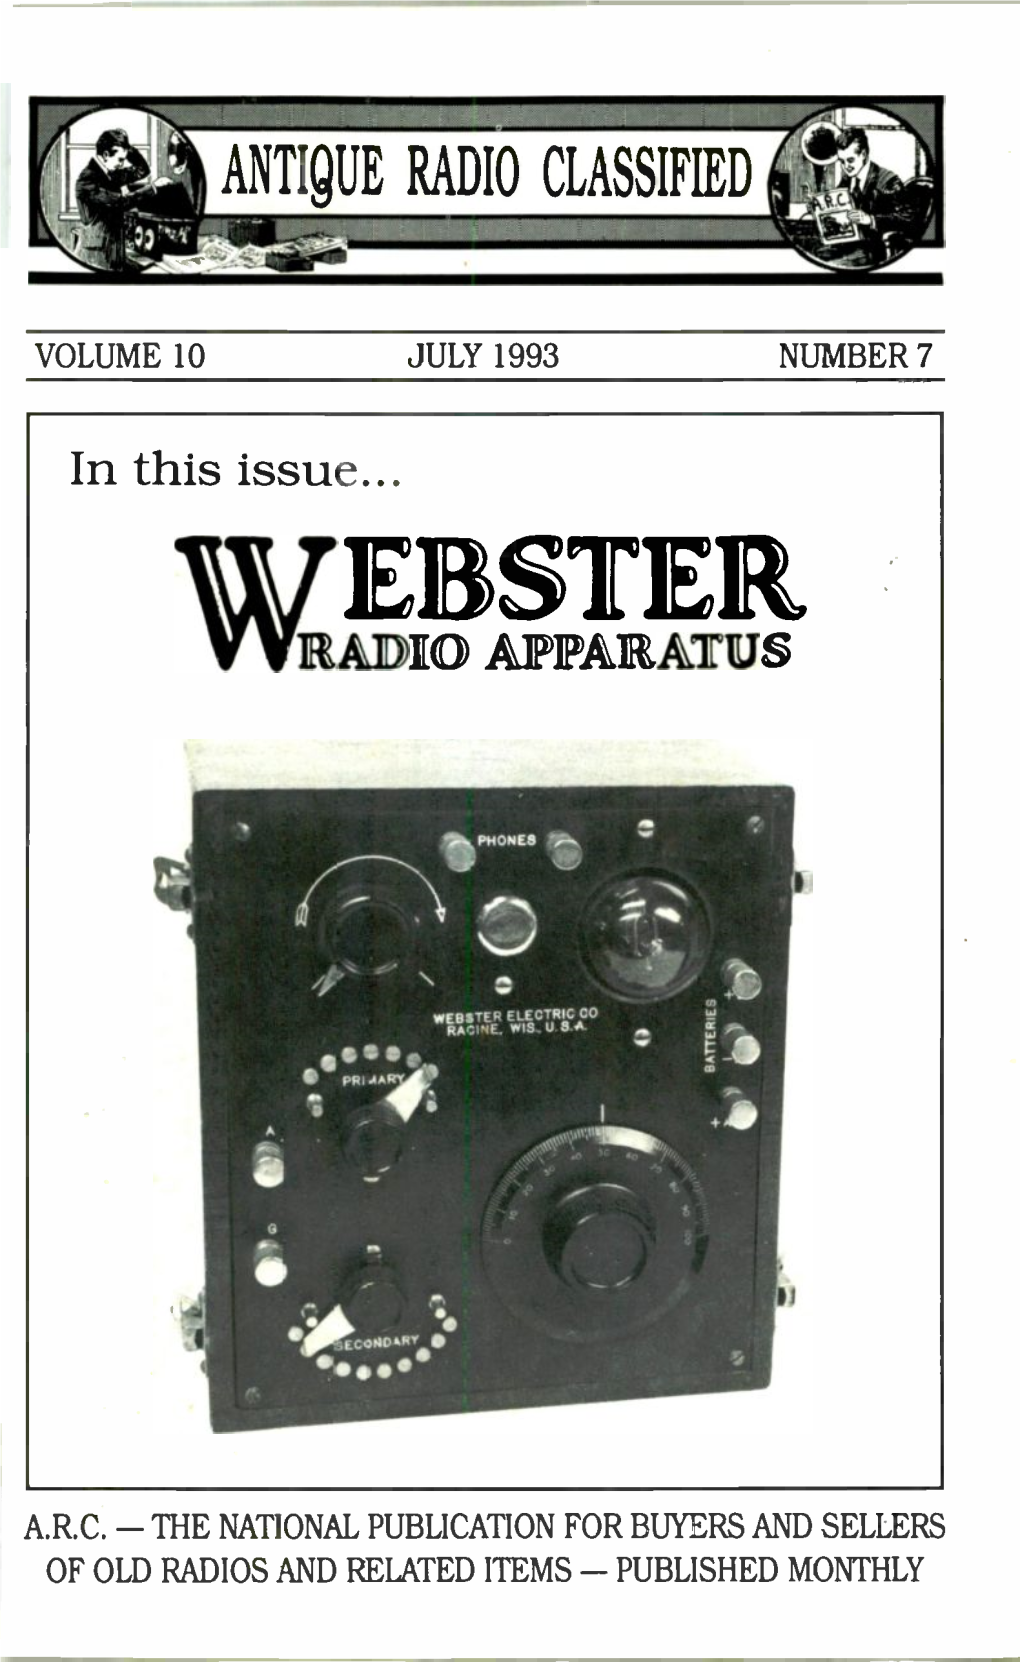 Volume 10 July 1993 Number 7